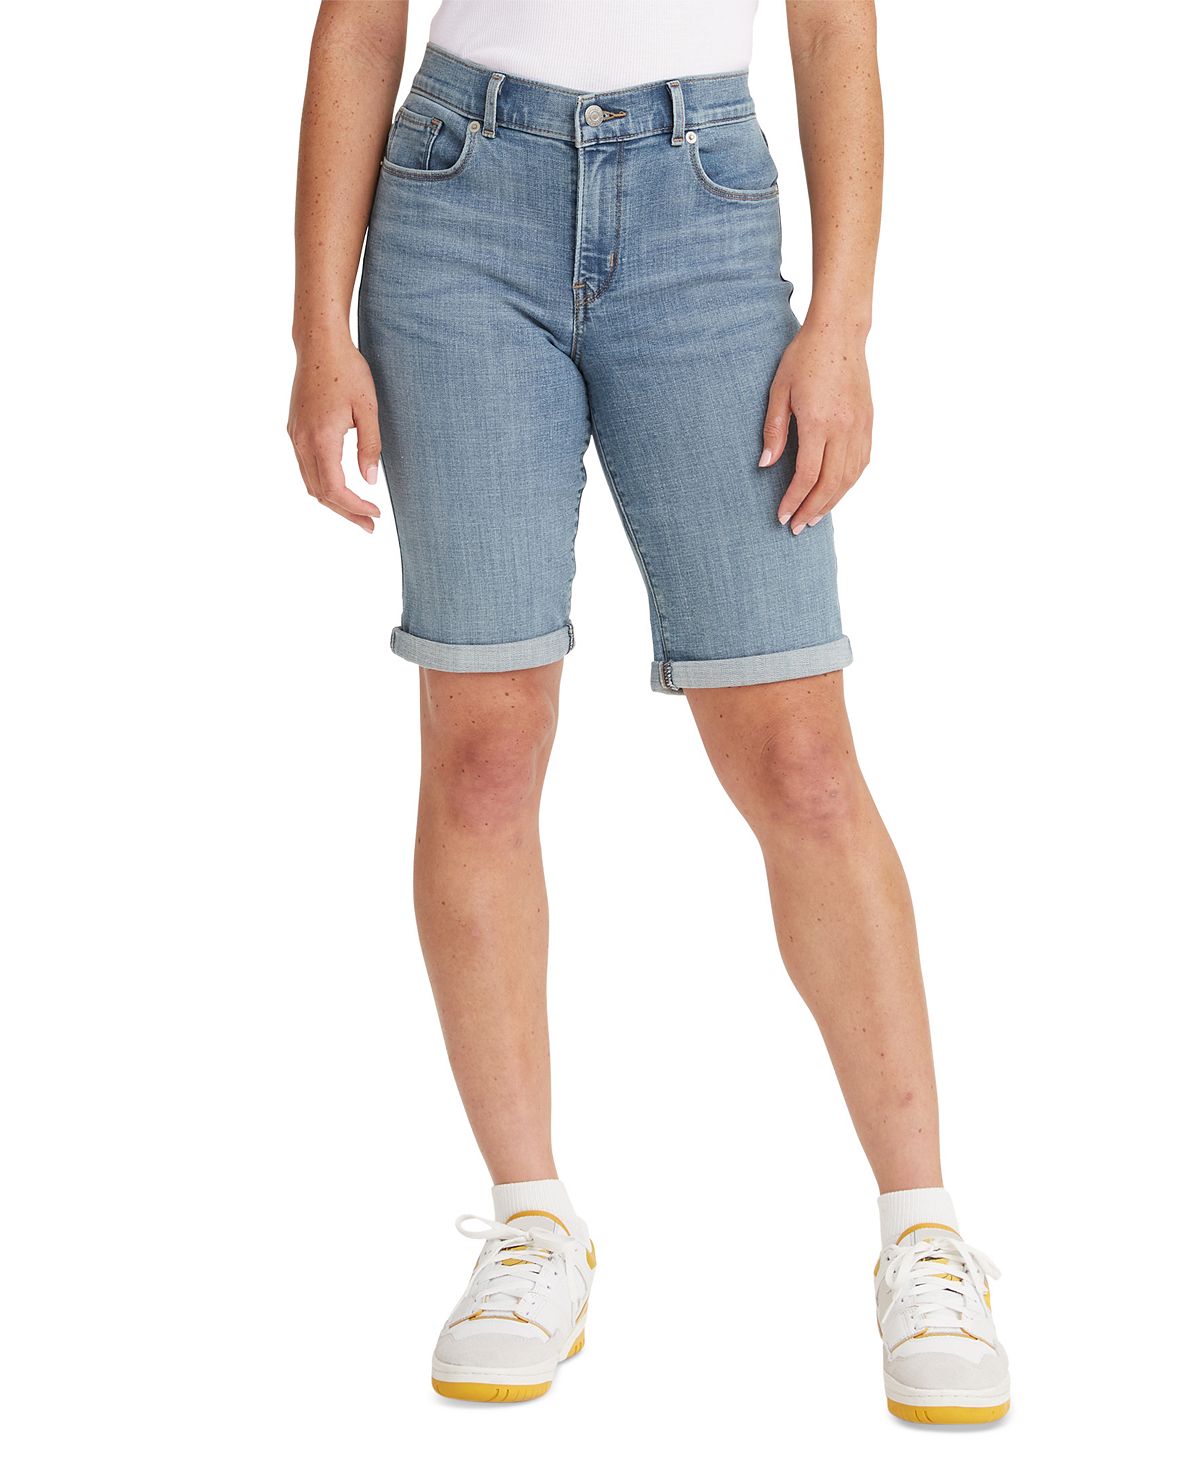 Женские джинсовые шорты-бермуды стрейч со средней посадкой Levi's